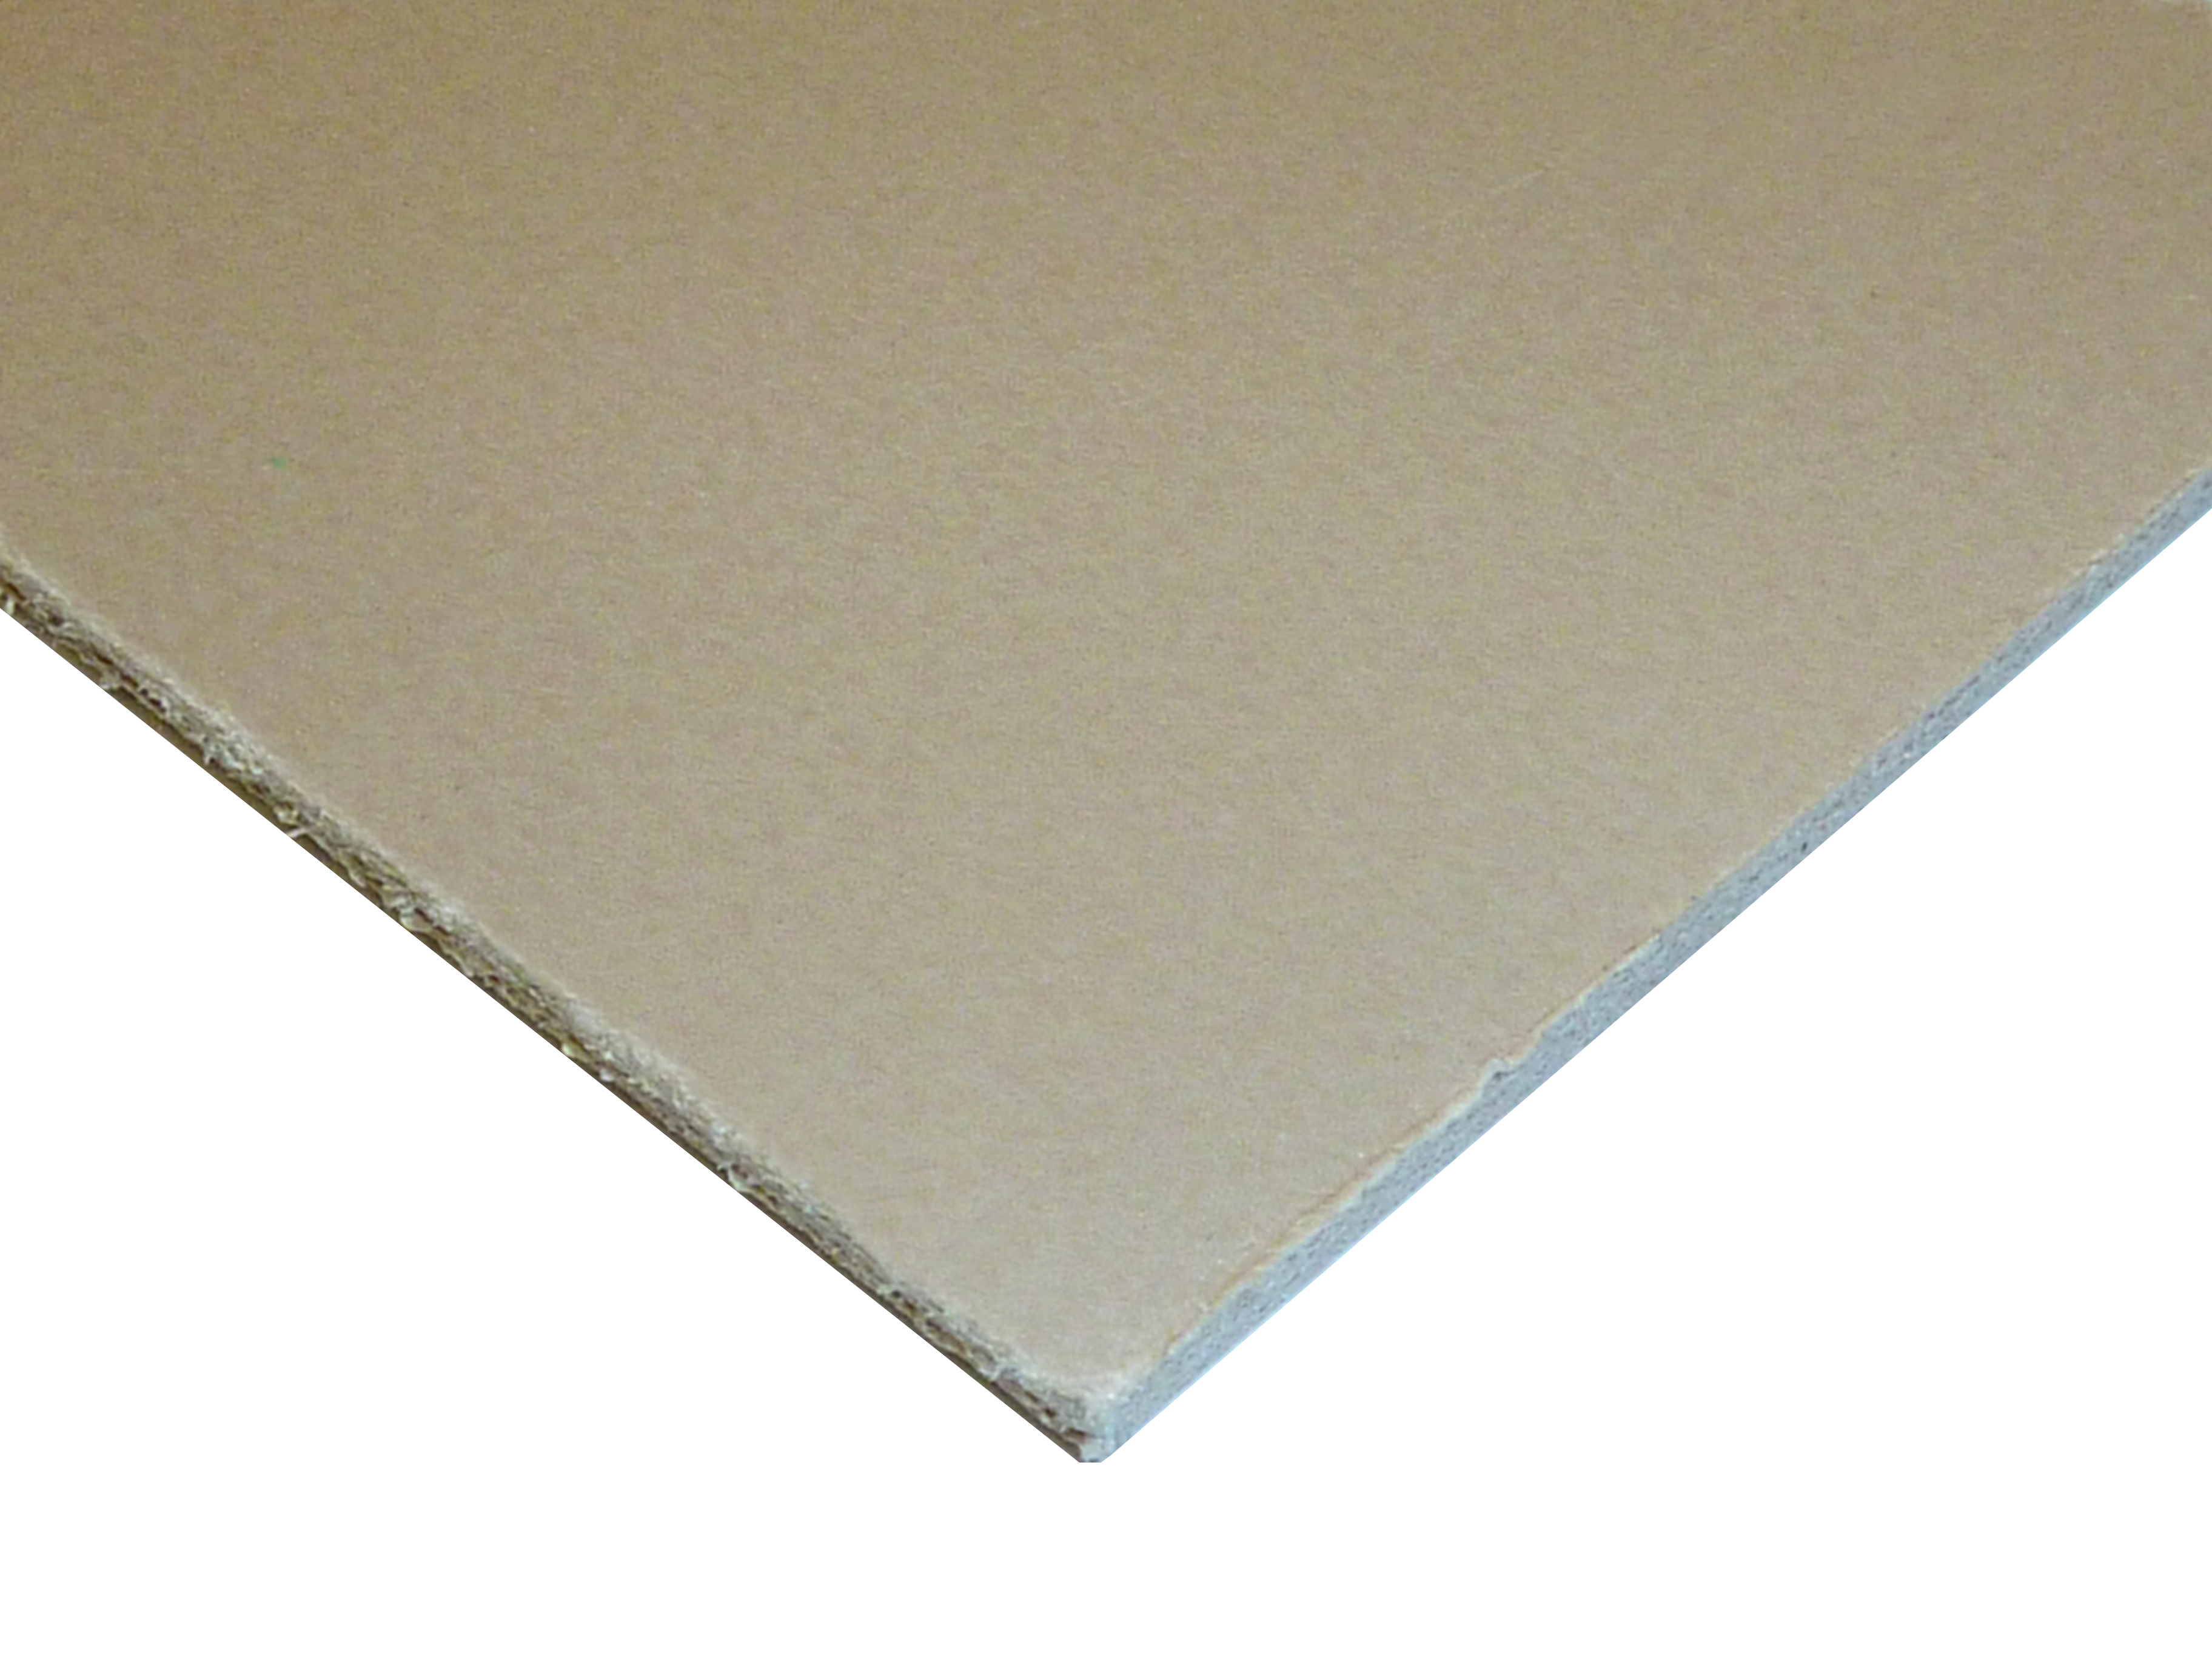 BEIGE / TAN EXP PVC 3mm 4x8FT - Beige / Tan Expanded PVC Sheets